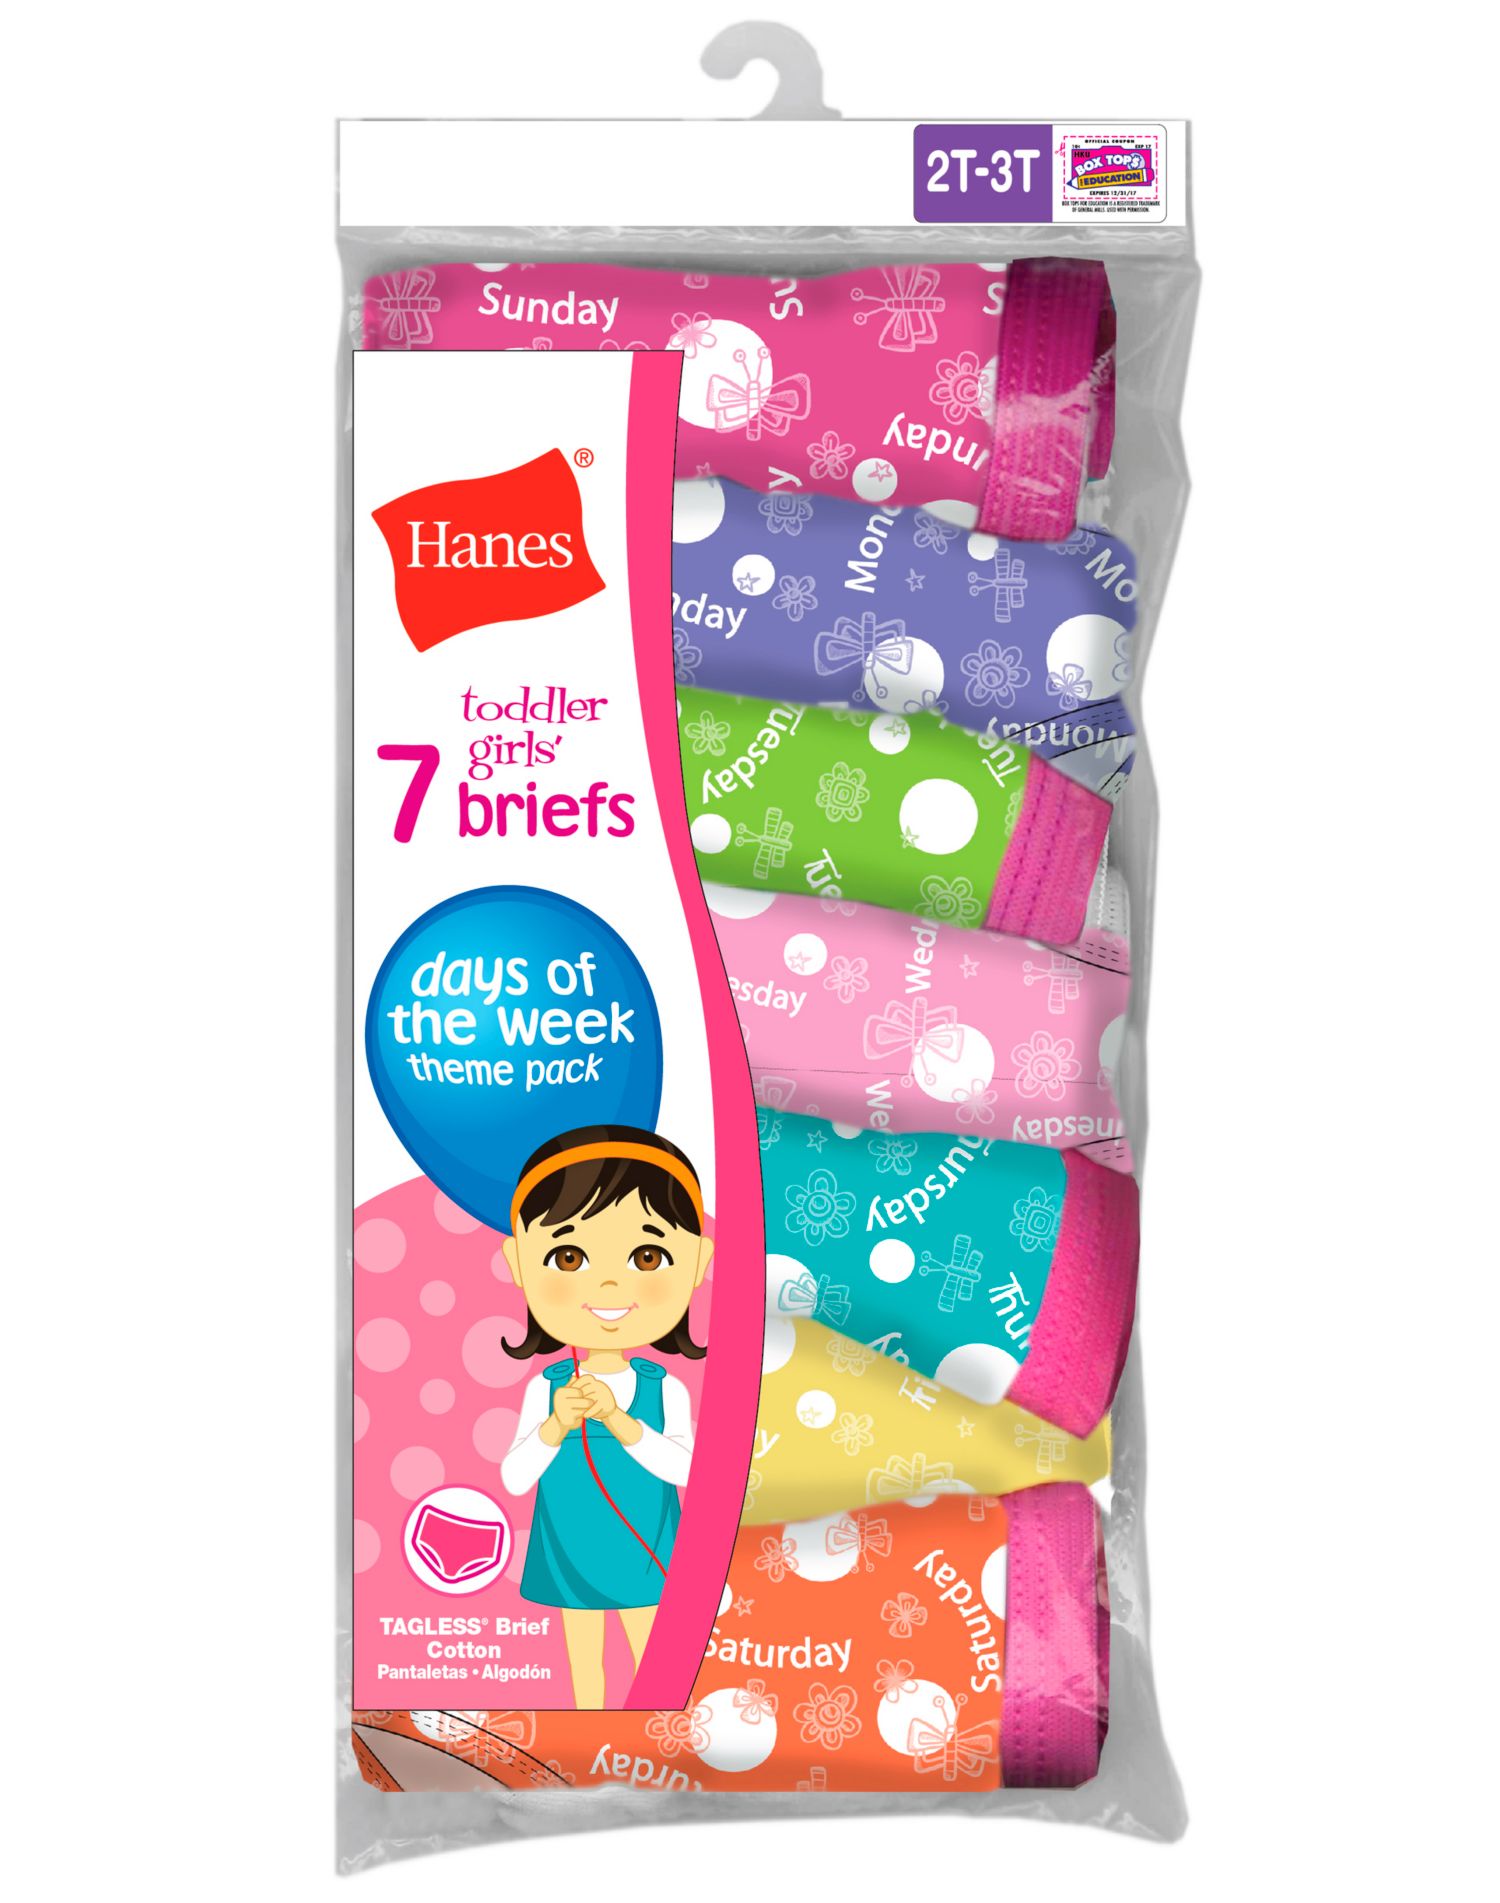 Hanes Brief Underwear, 7-Pack (Toddler Girls) - image 1 of 2